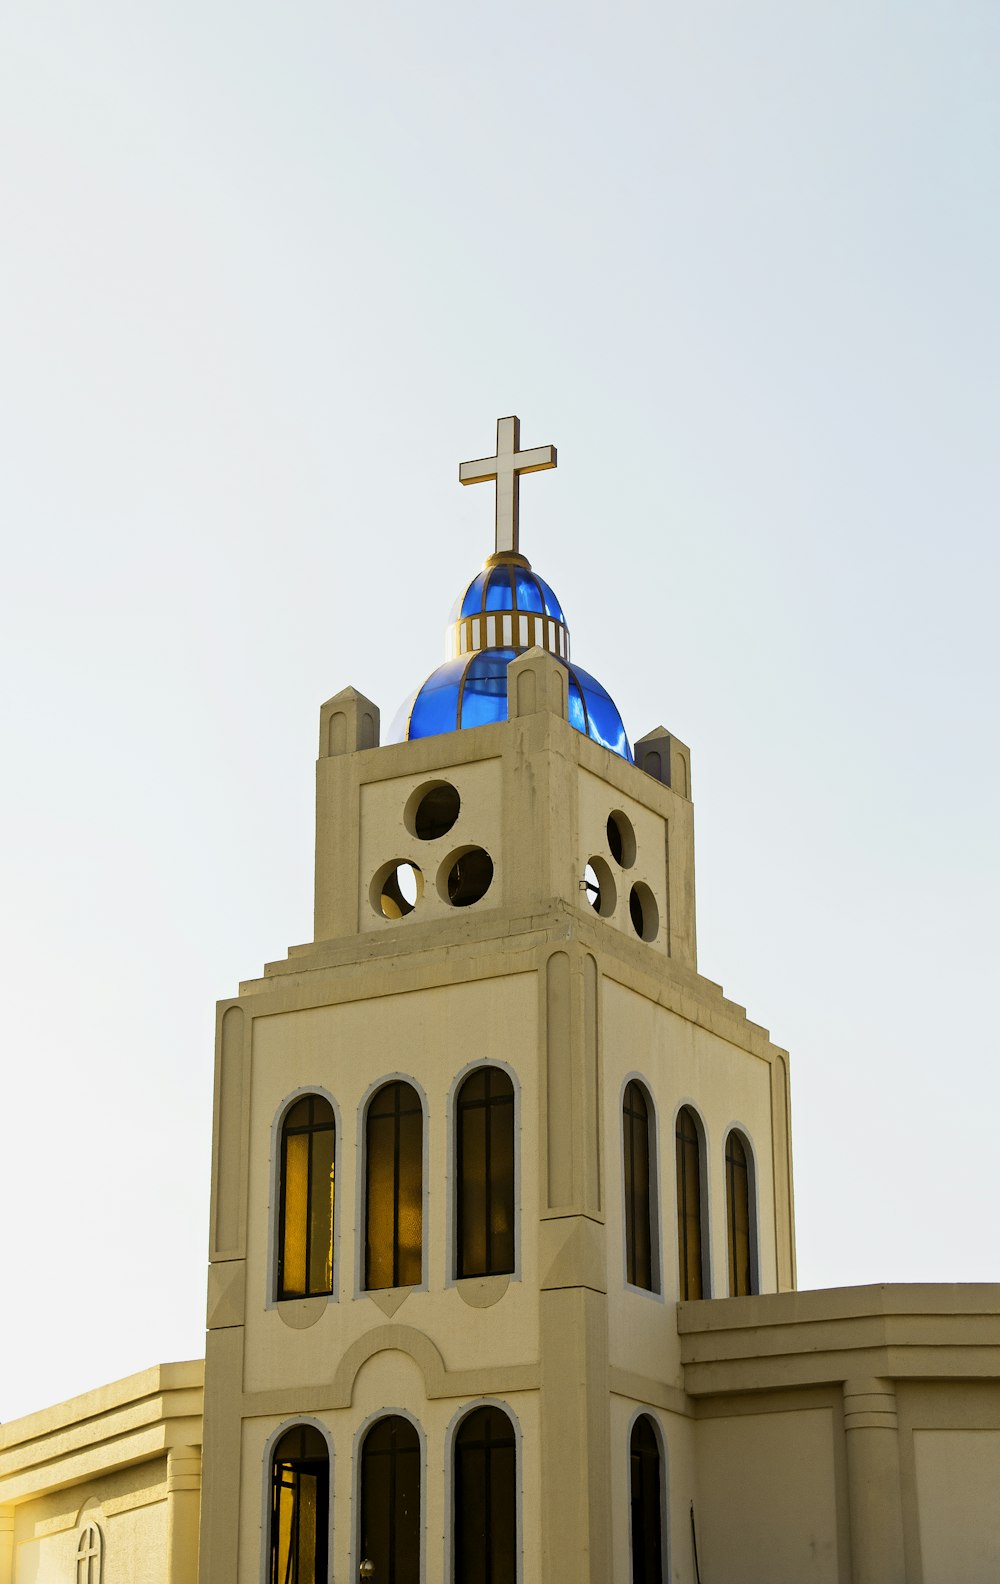 그 위에 십자가가있는 교회